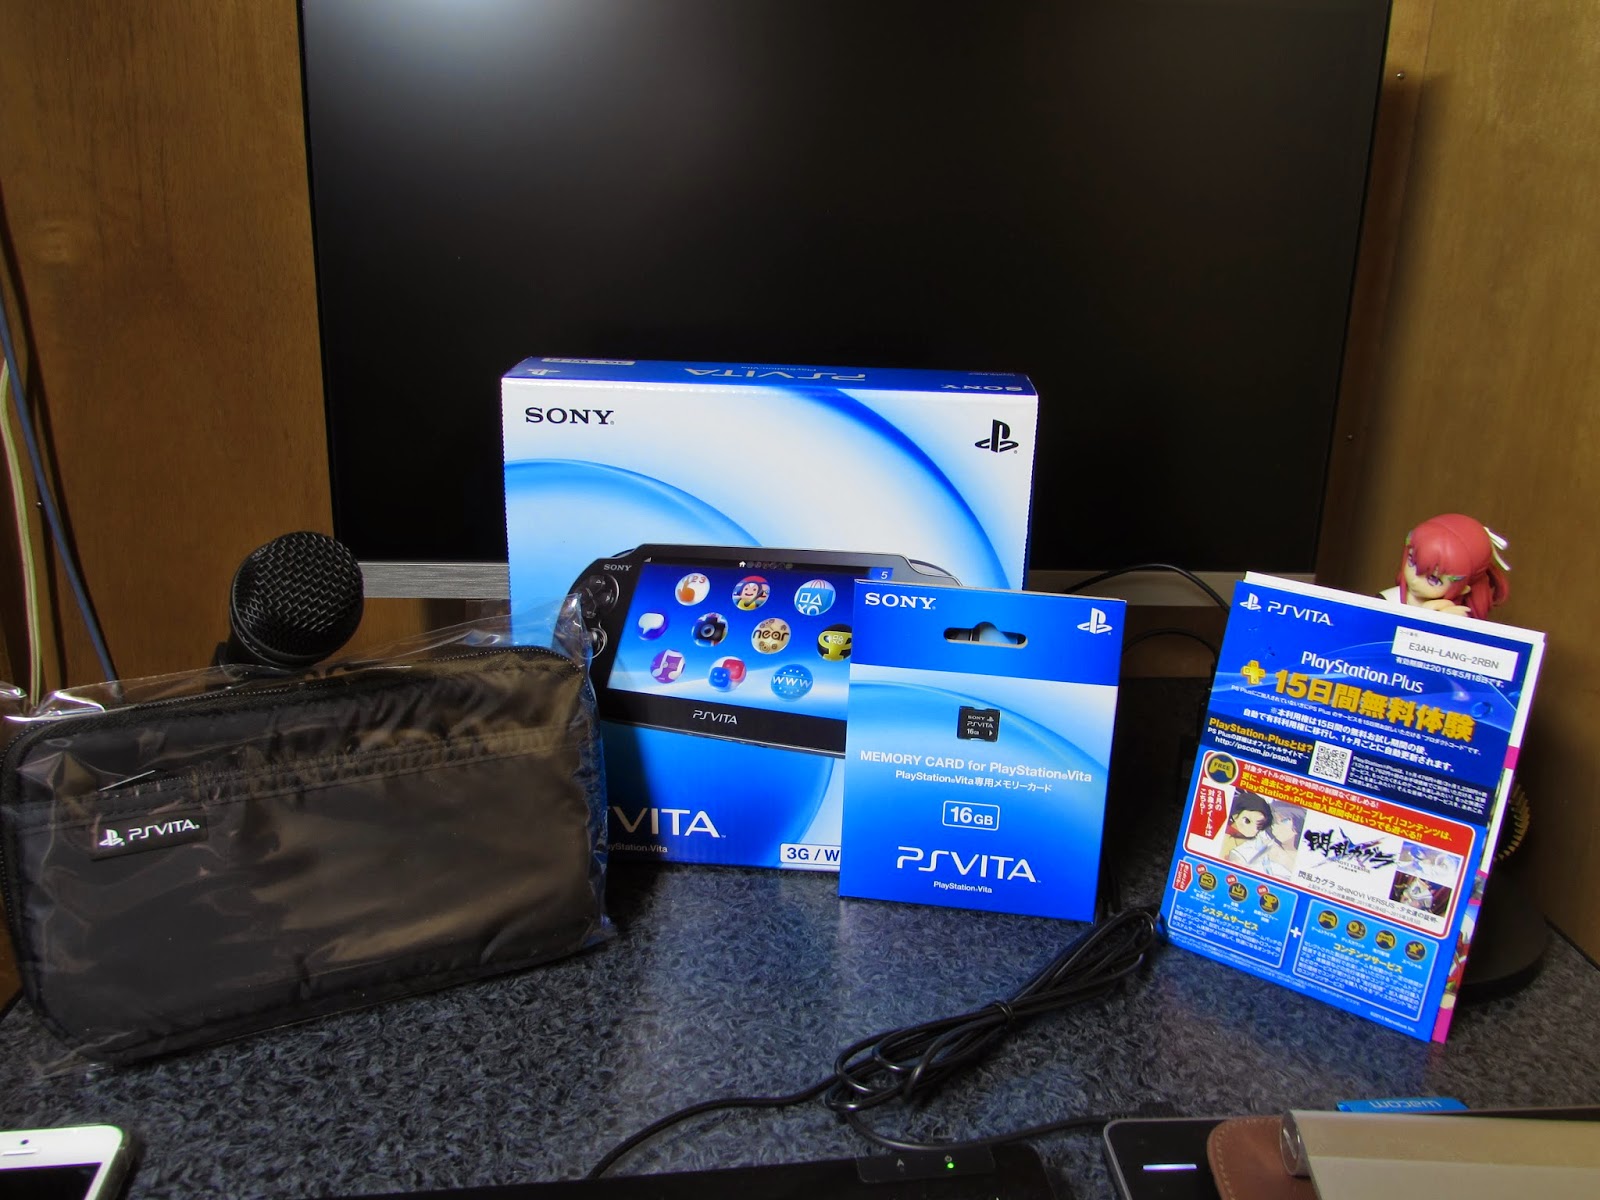 平凡なブログ: 24日 PlayStation Vita デビューパック 3G/Wi-Fiモデル クリスタル・ブラック を購入したよ